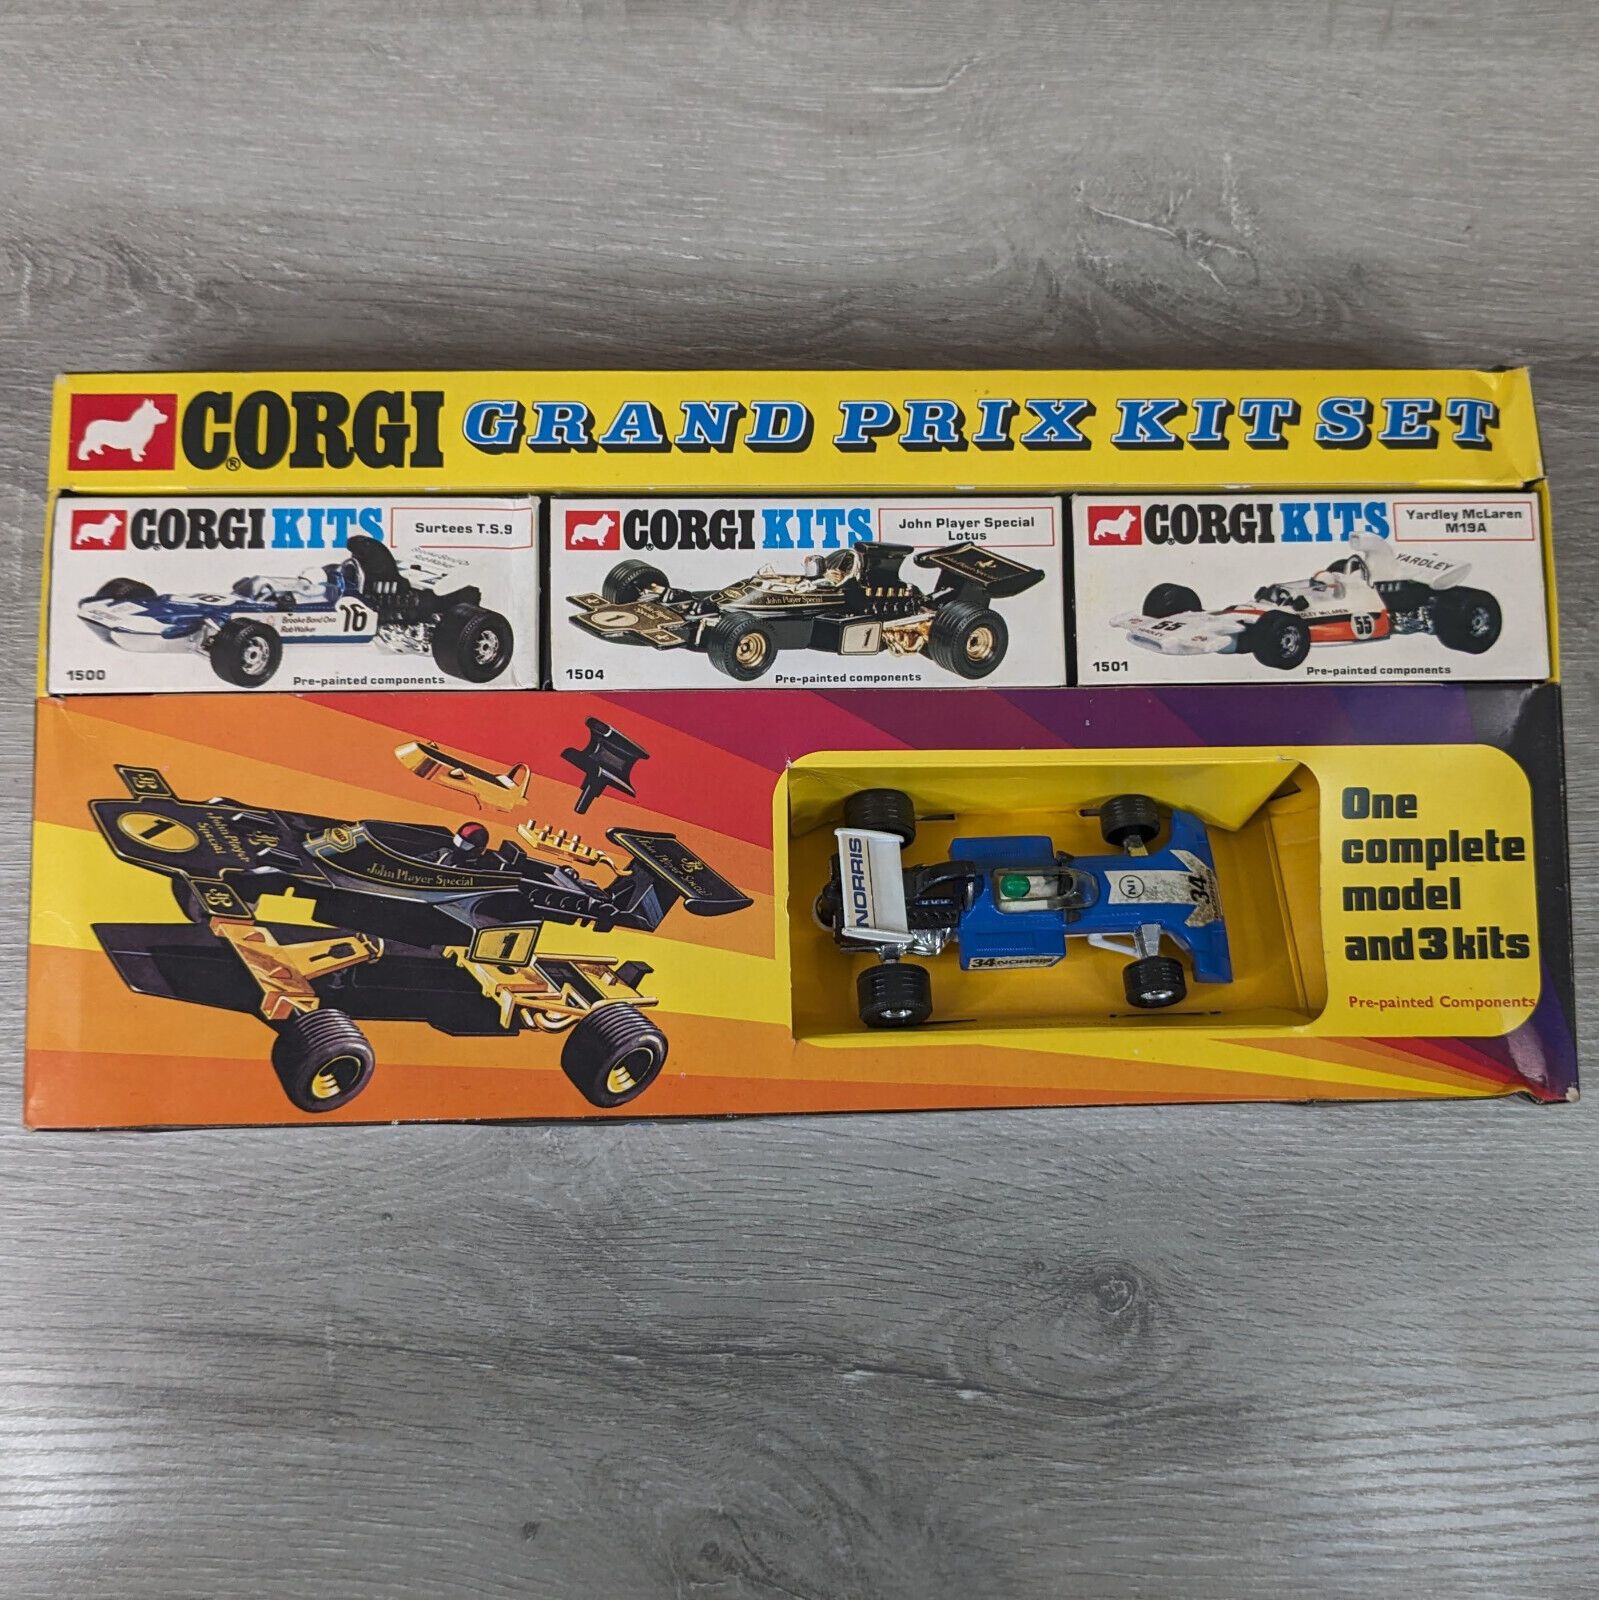 Corgi GS30 Grand Prix Kit Set (1973) - 1:36 Scale - Complete, Open Box - RARE!! - $399.95